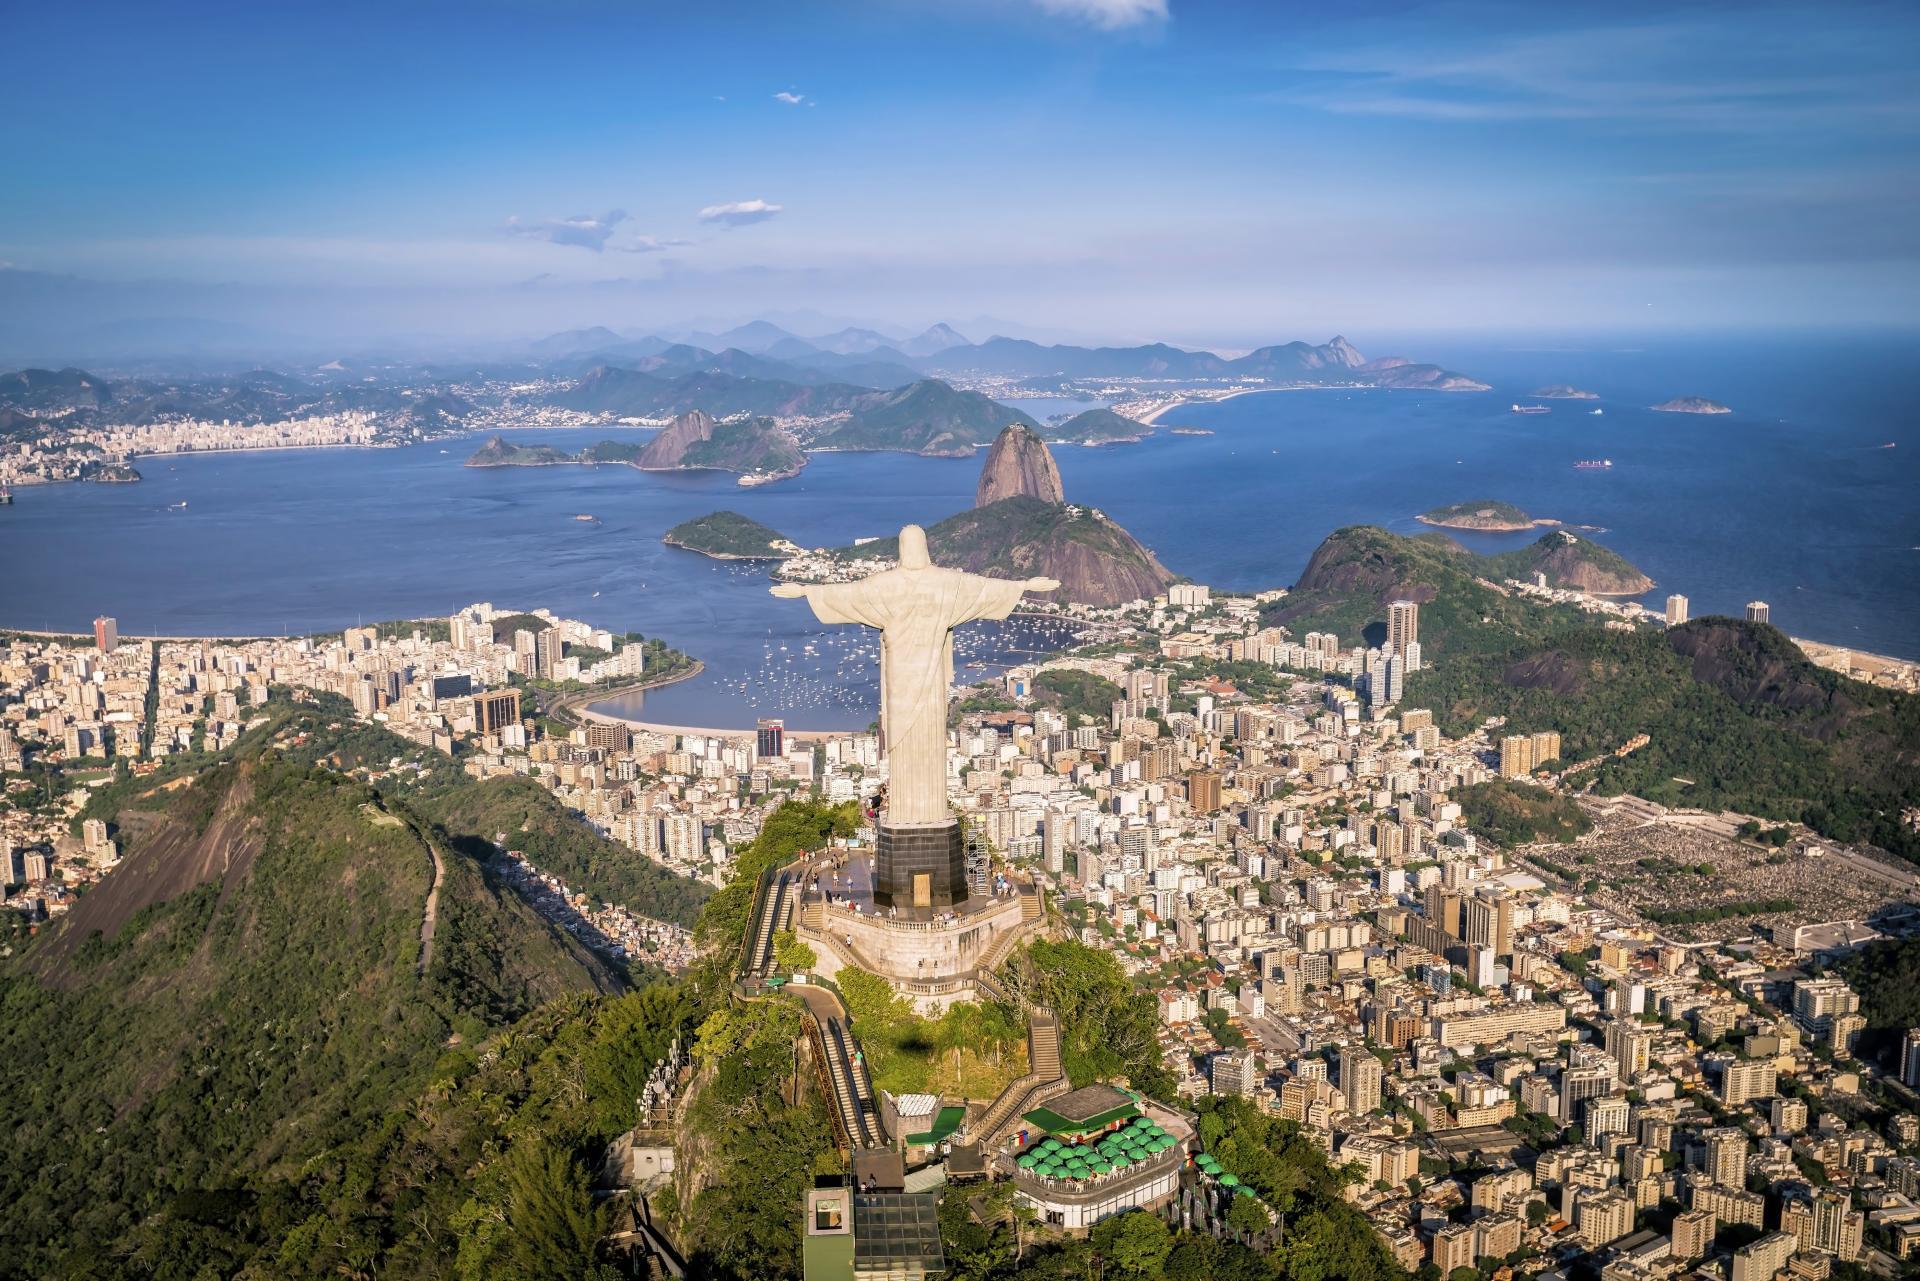 Christ the Redeemer overlooking Rio de Janeiro